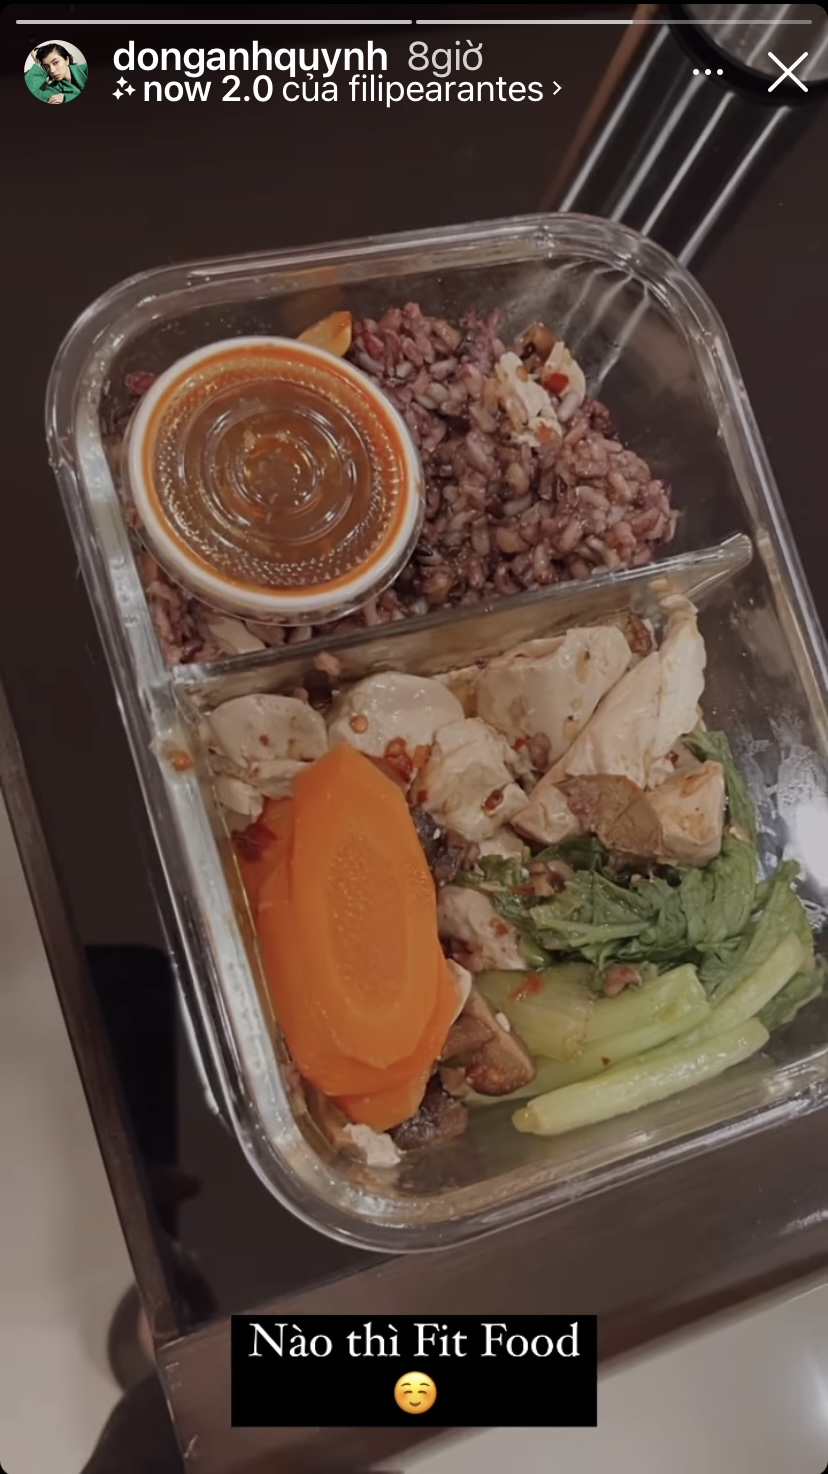 Hộp đồ ăn healthy của Đồng Ánh Quỳnh có cơm gạo lứt, rau, ức gà và vài miếng cà rốt.